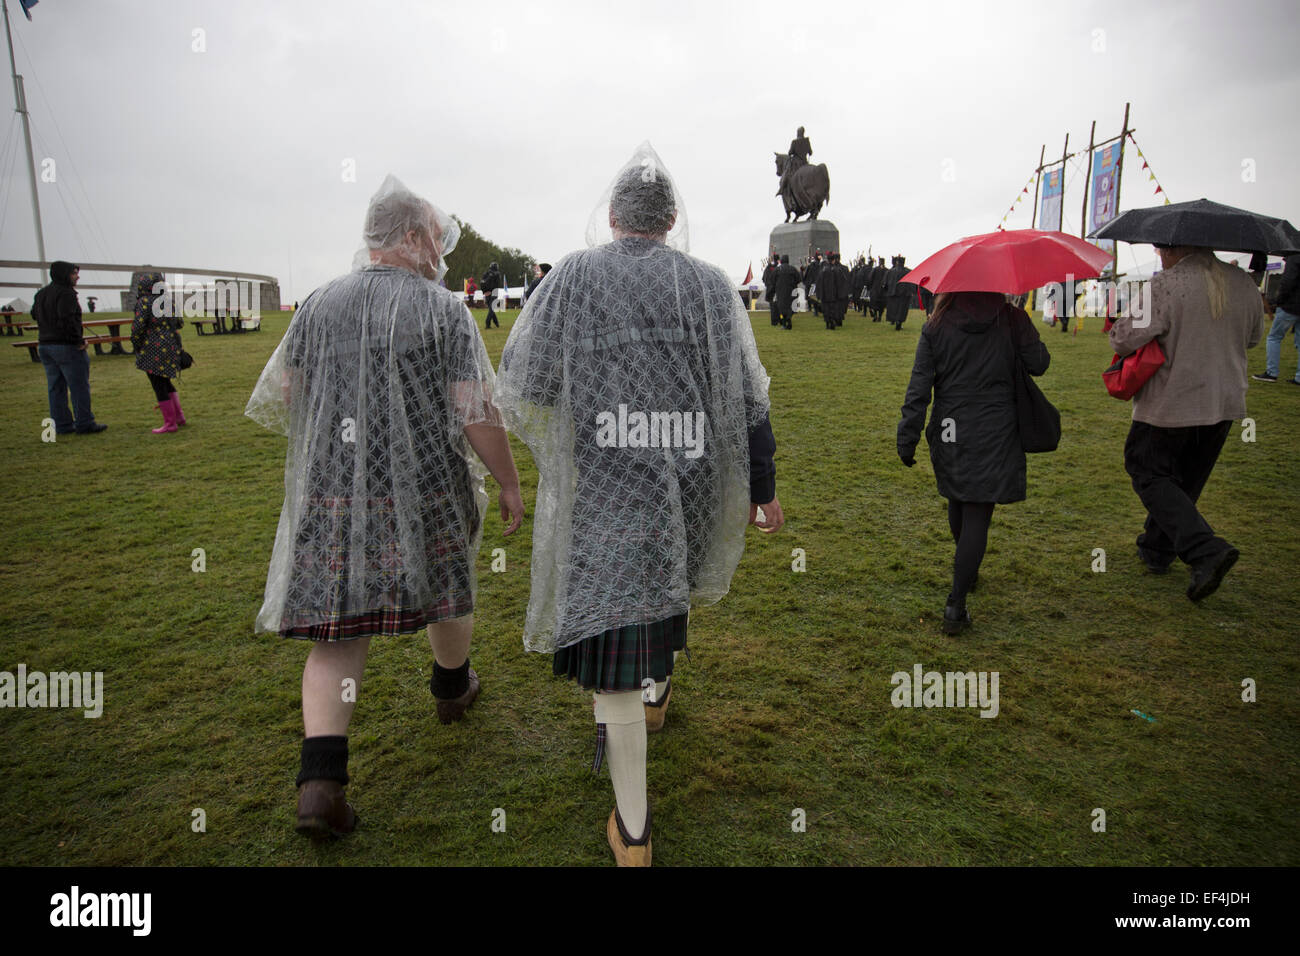 Deux hommes vêtus de kilts et ponchos de pluie lors d'événements à Bannockburn, Vivre à Bannockburn, Stirlingshire. Banque D'Images